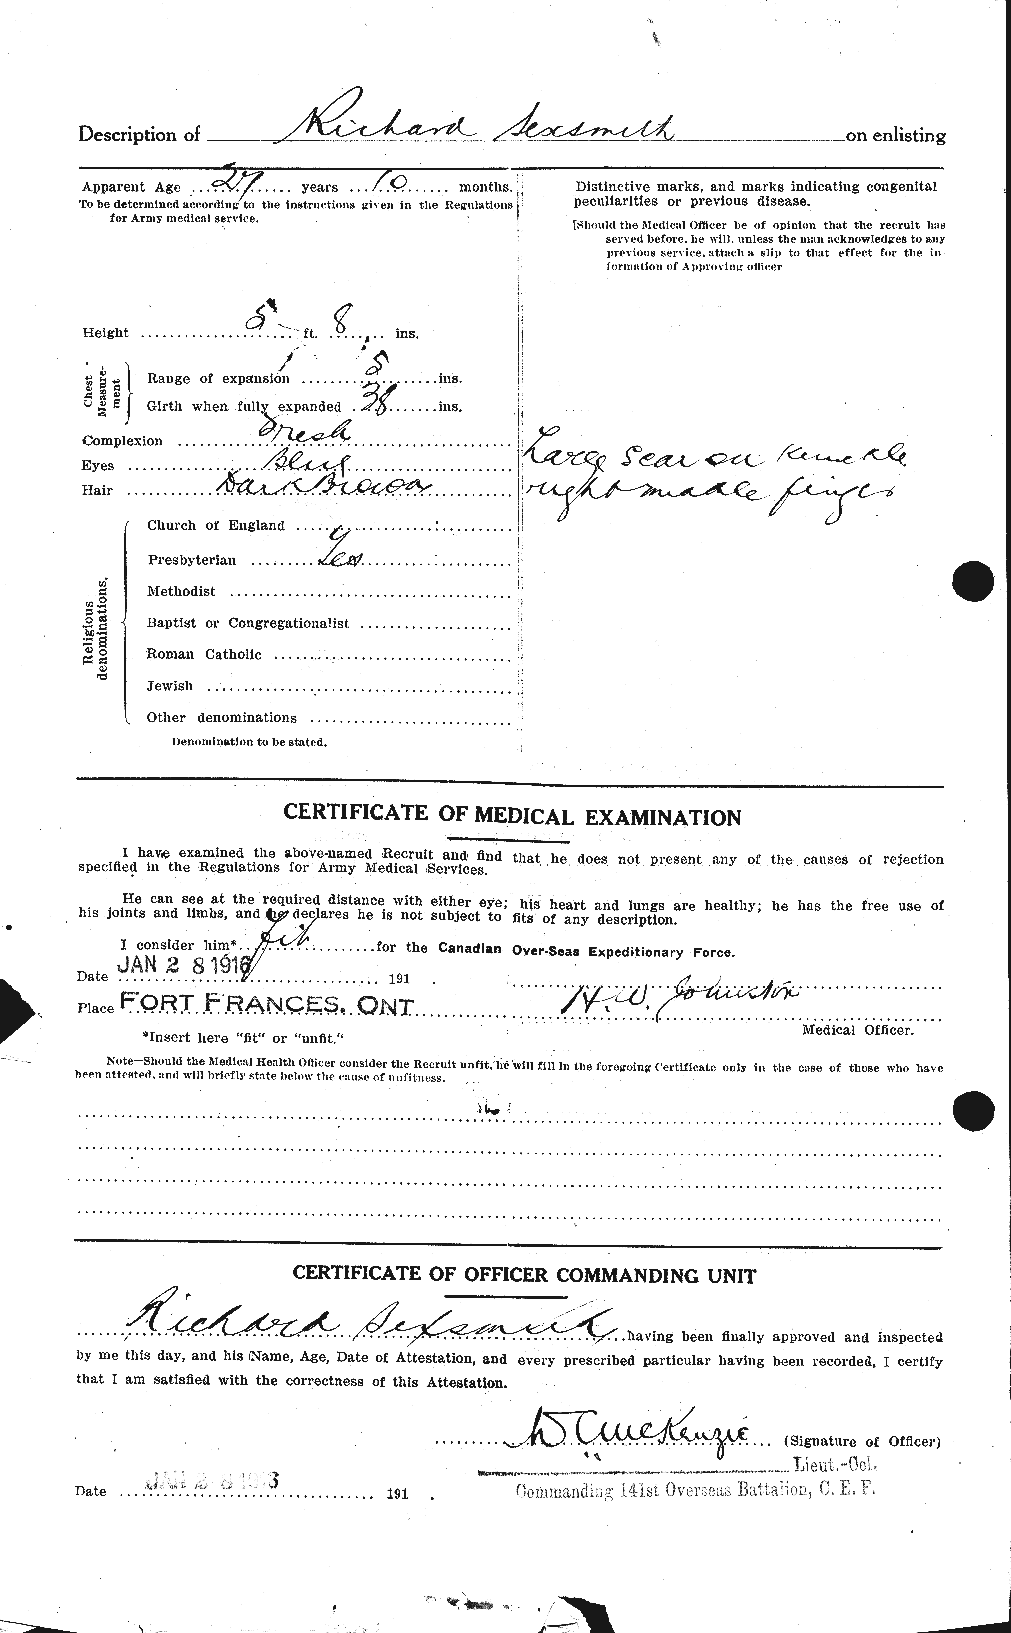 Dossiers du Personnel de la Première Guerre mondiale - CEC 089552b